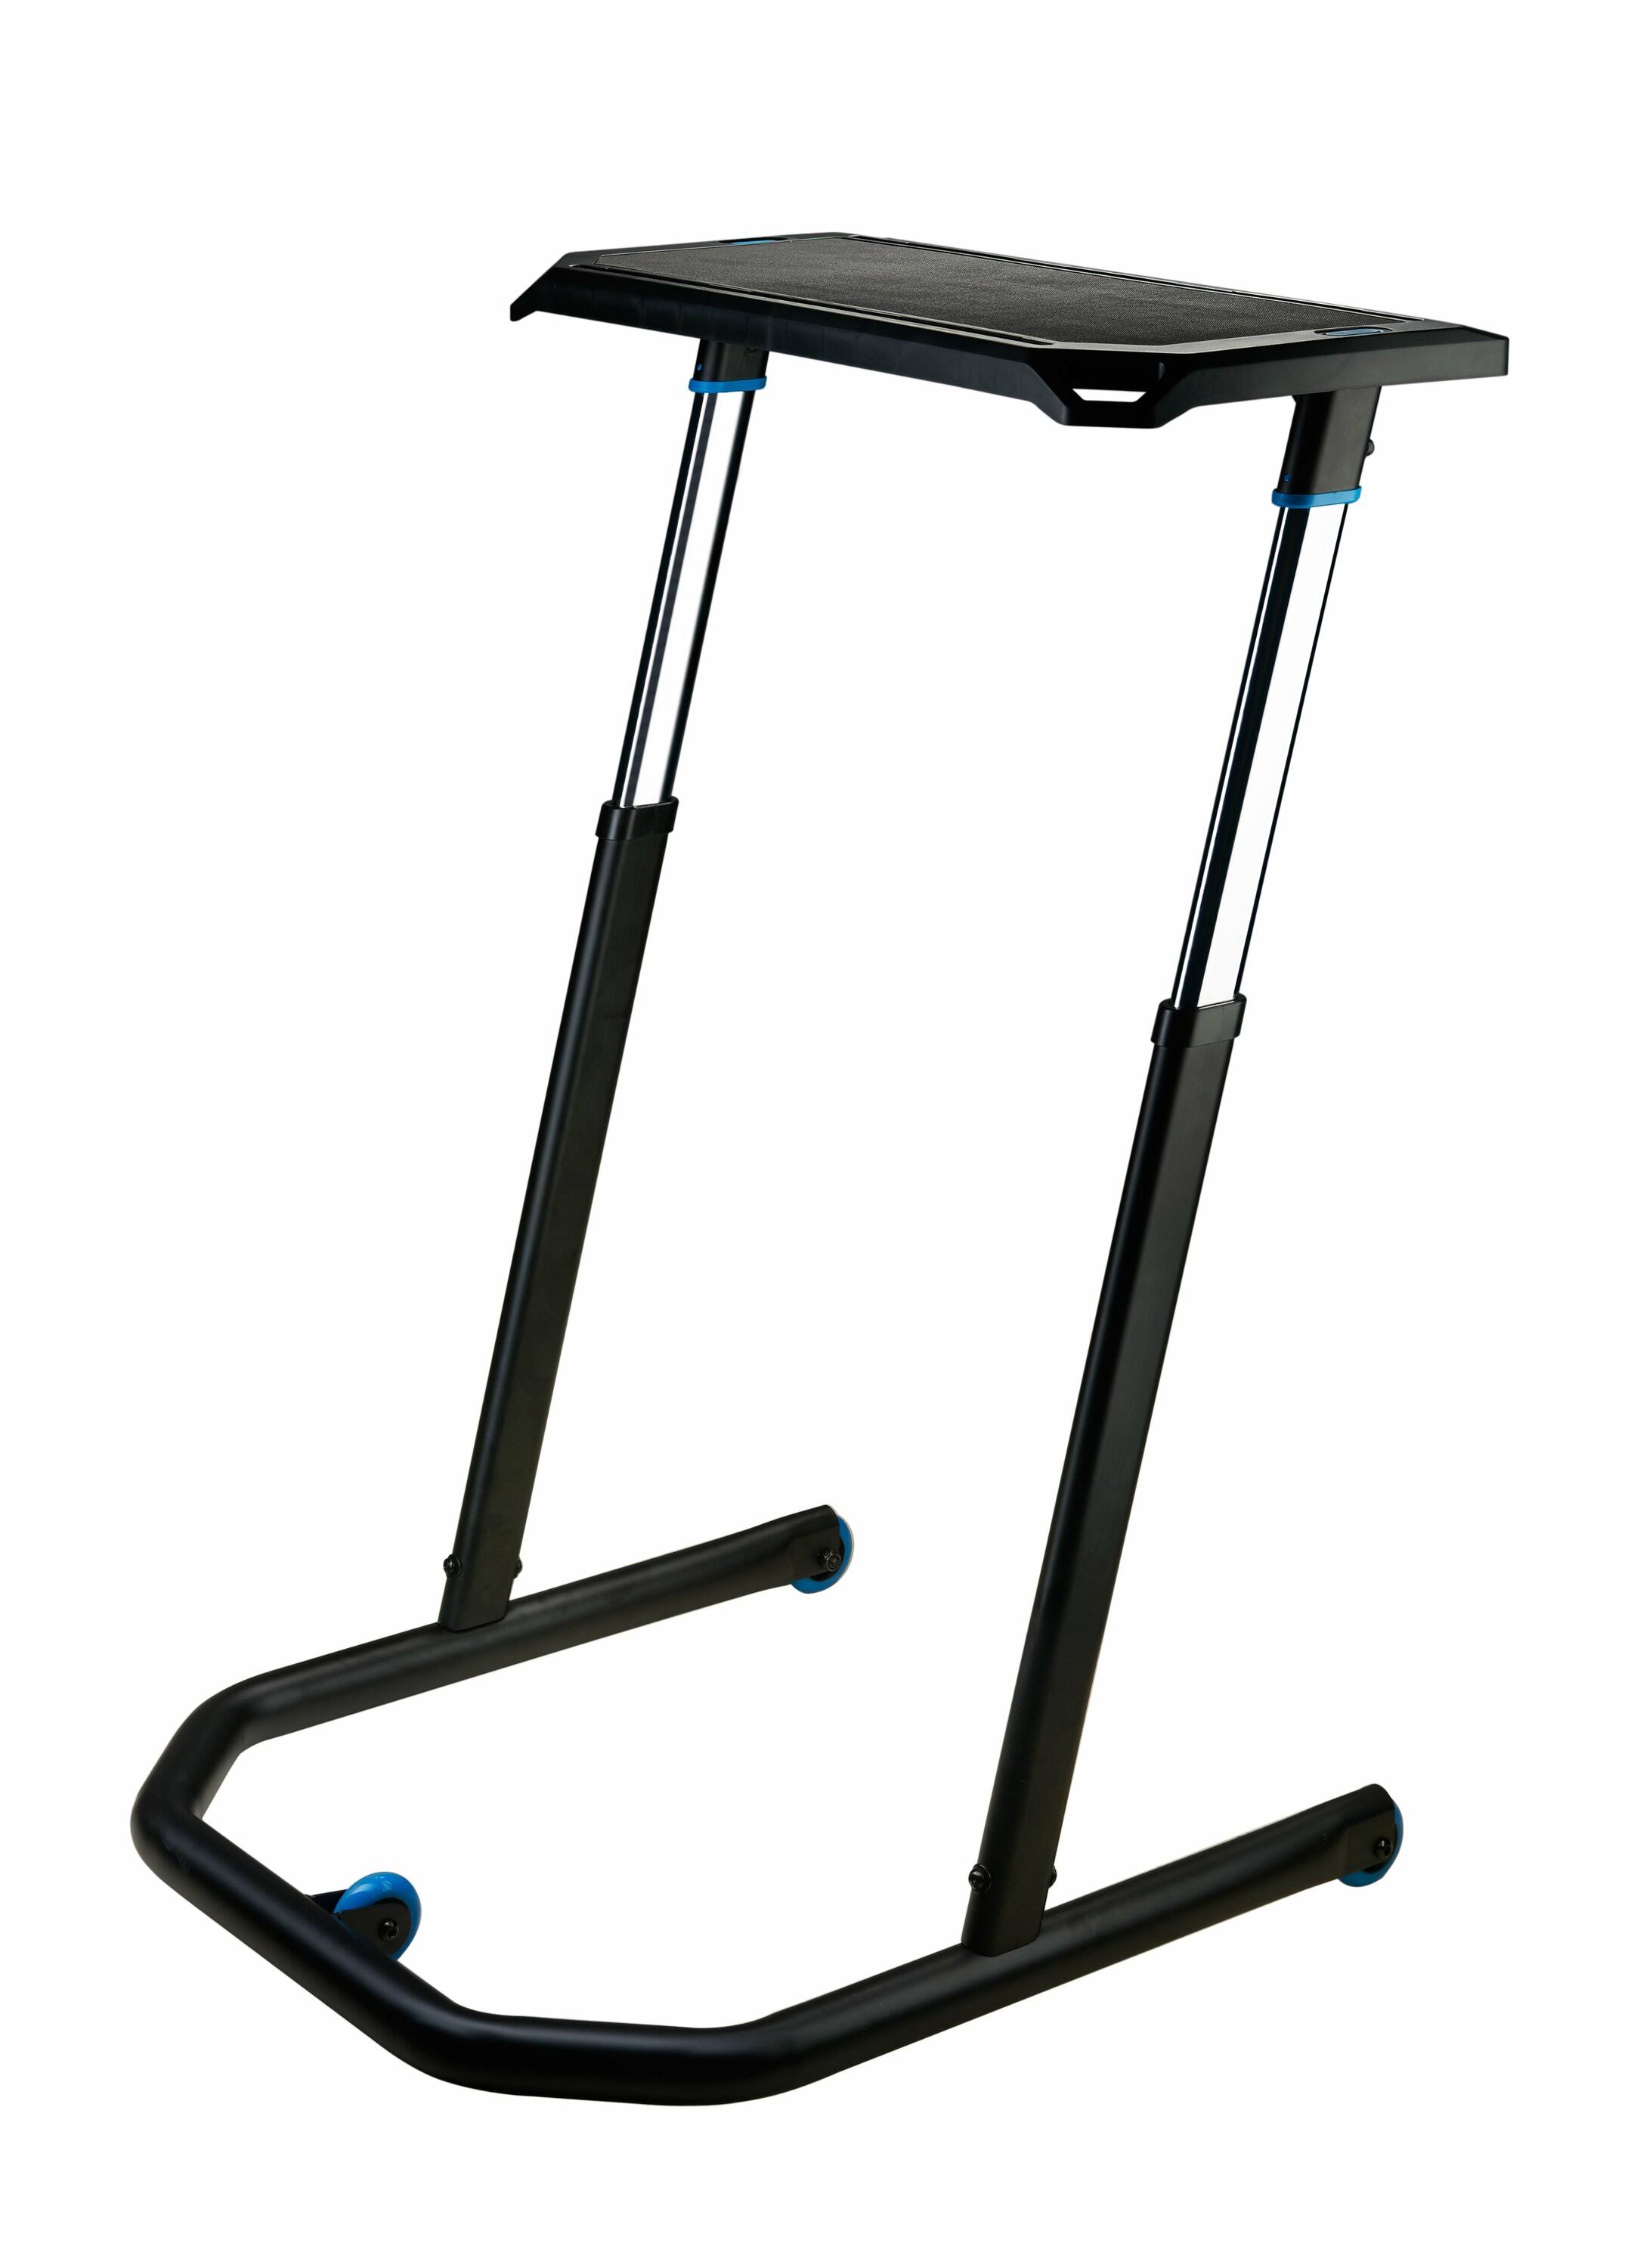 Wahoo Kickr Multi Purpose Adjustable Height Desk - Black